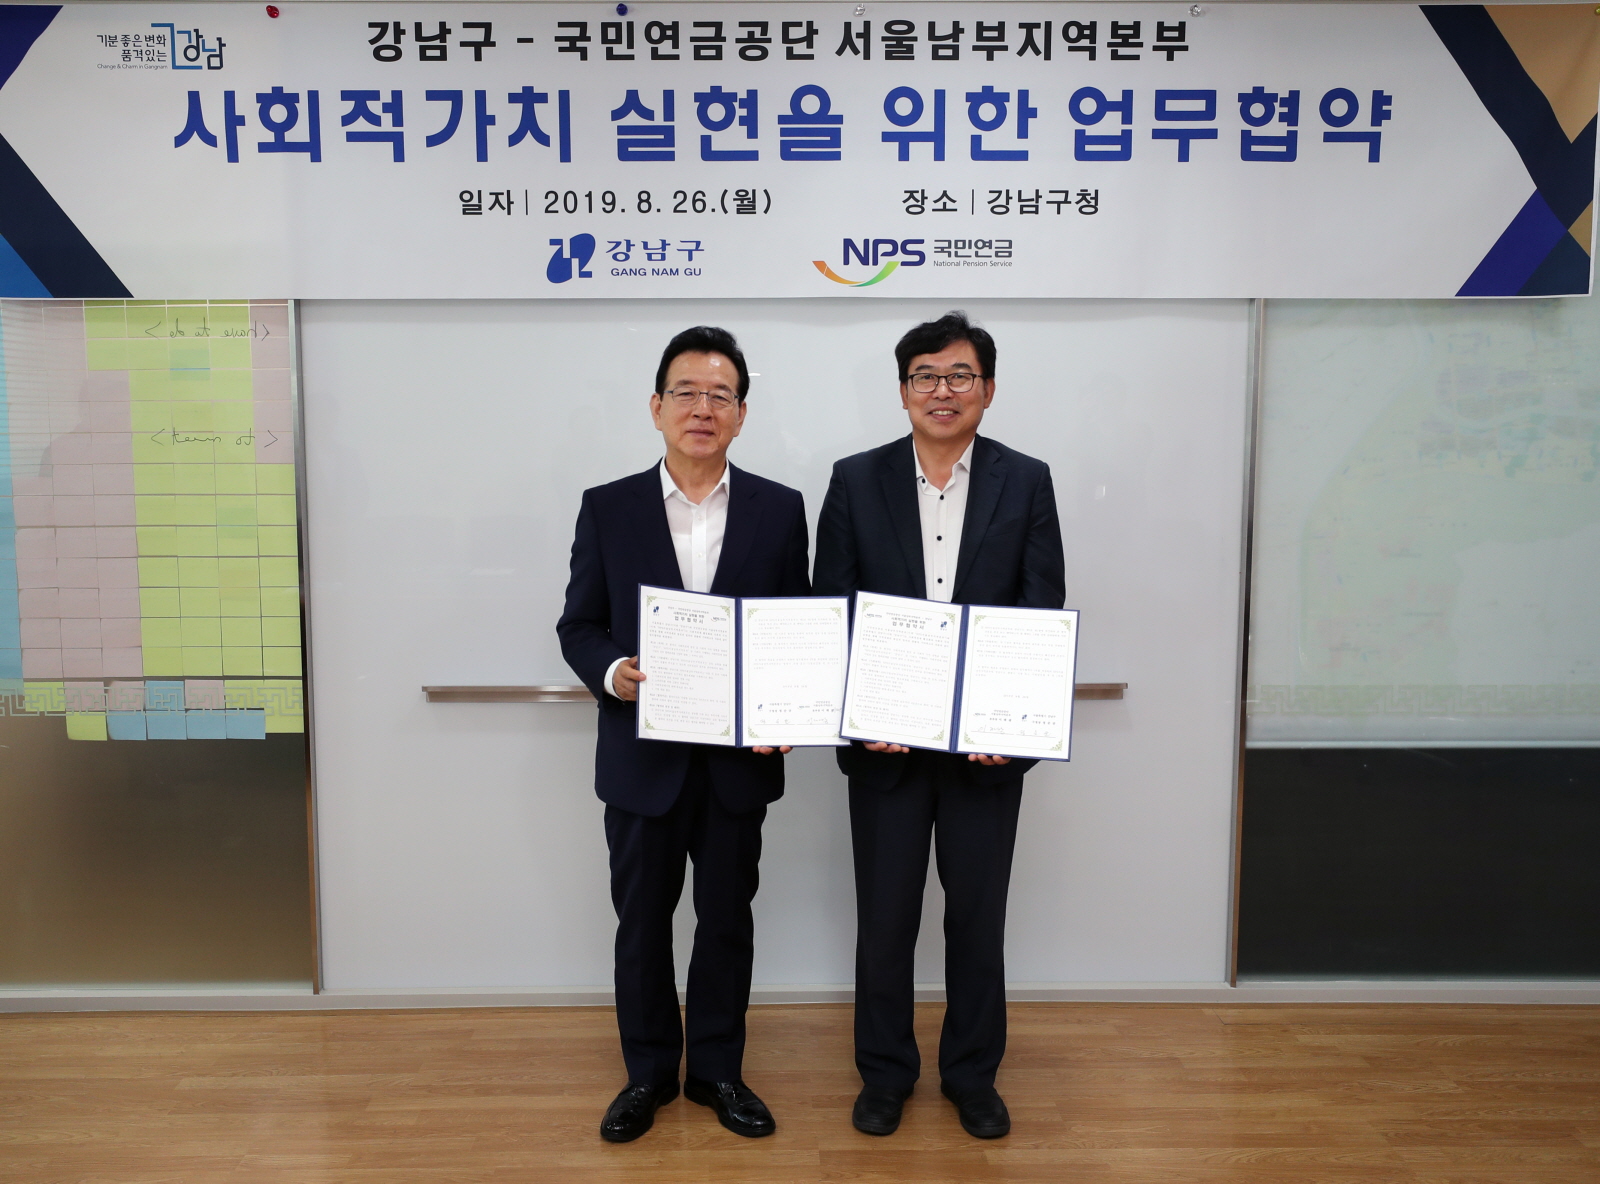 강남구, 국민연금공단 서울남부지역본부와 업무협약 체결